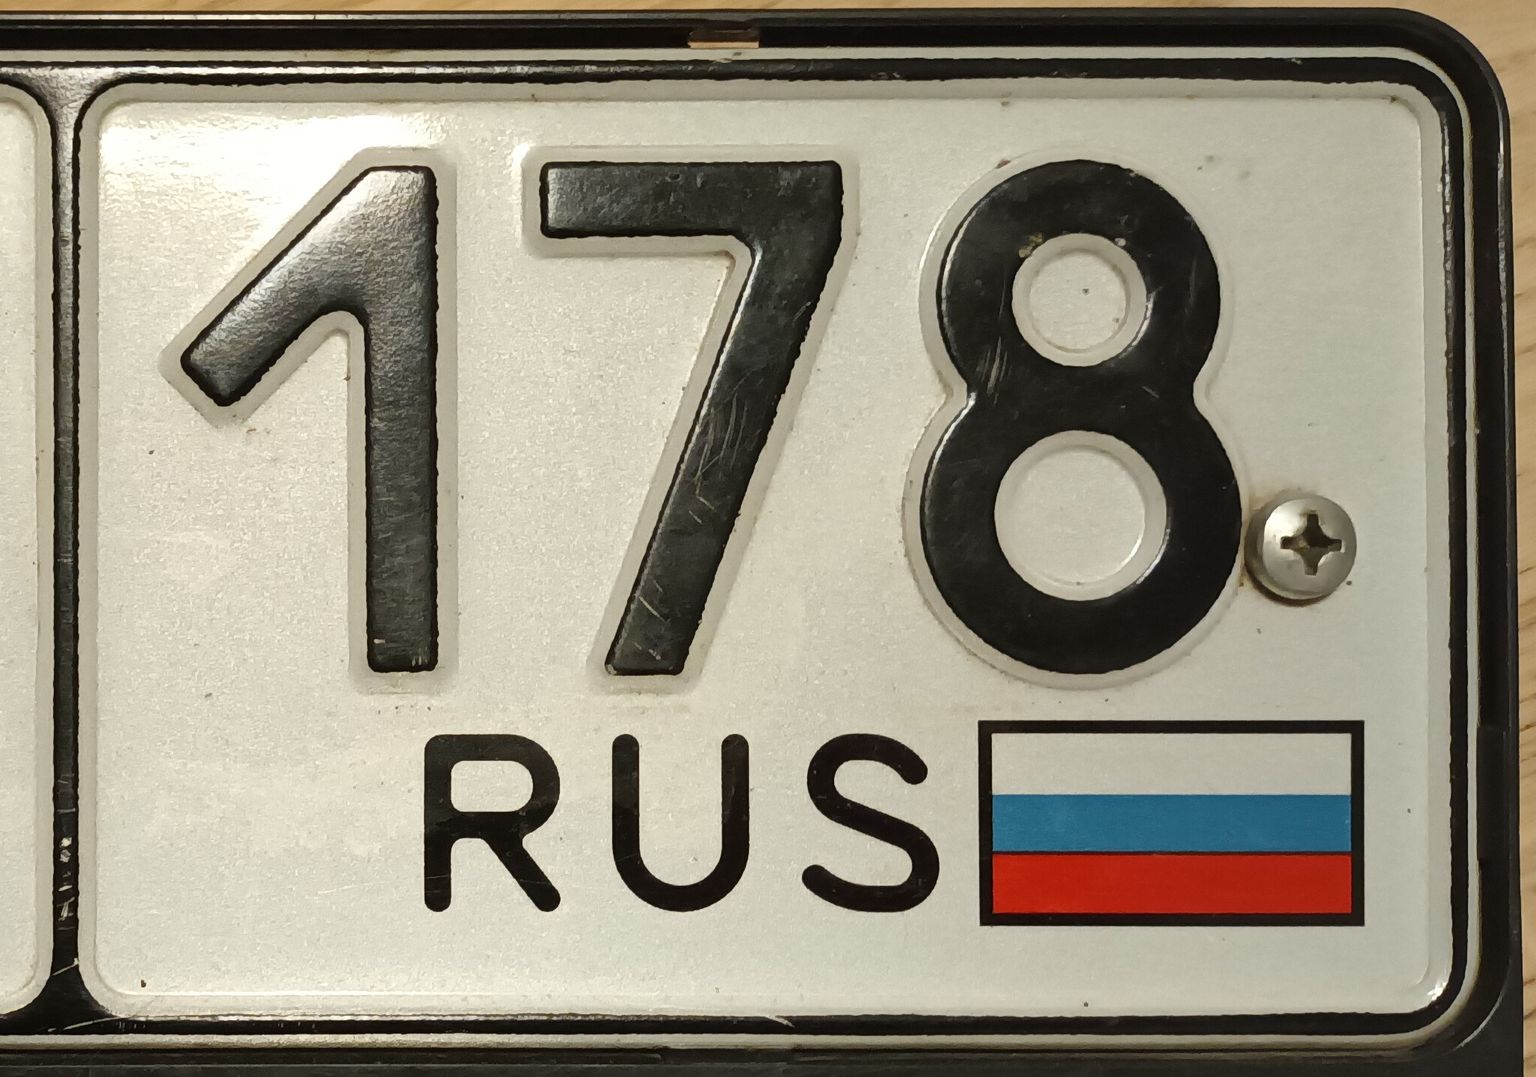 Фрагмент номера российского автомобиля, который был выдан в Санкт-Петербурге.